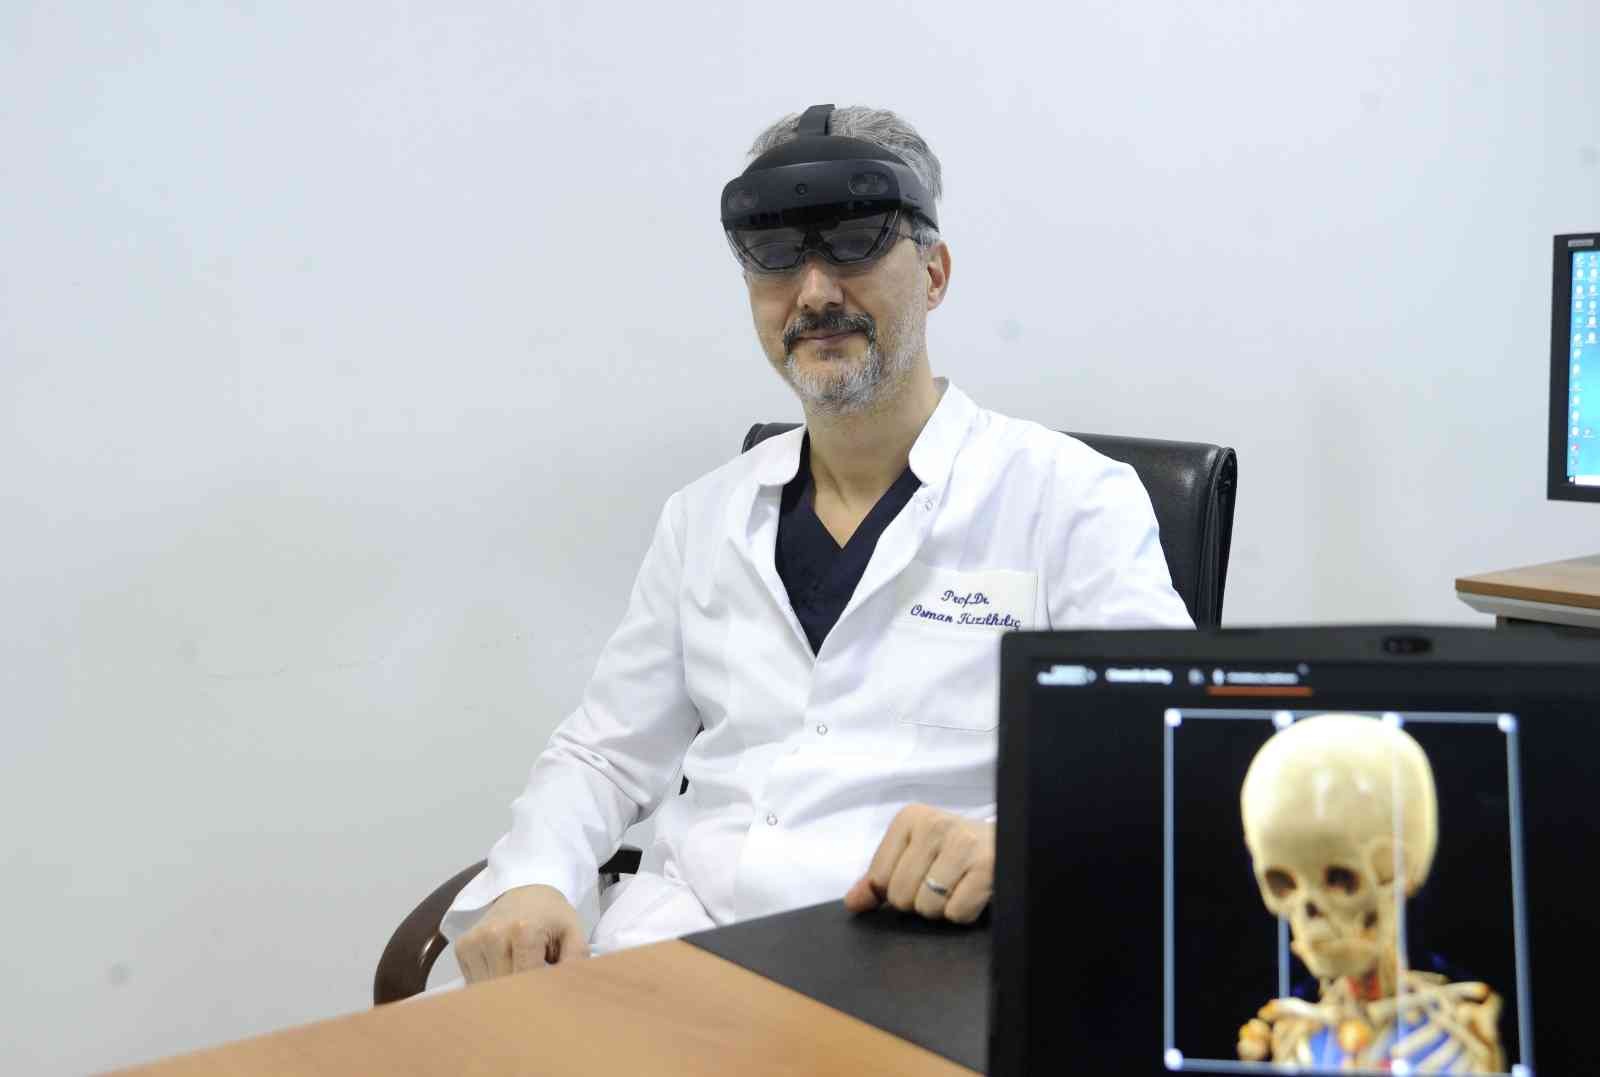 Sinematik Gerçeklik uygulaması ile klinik görüntüler detaylı olarak 3D şeklinde izlenebiliyor. Geliştirilen uygulama özellikle beyin ve damar ...